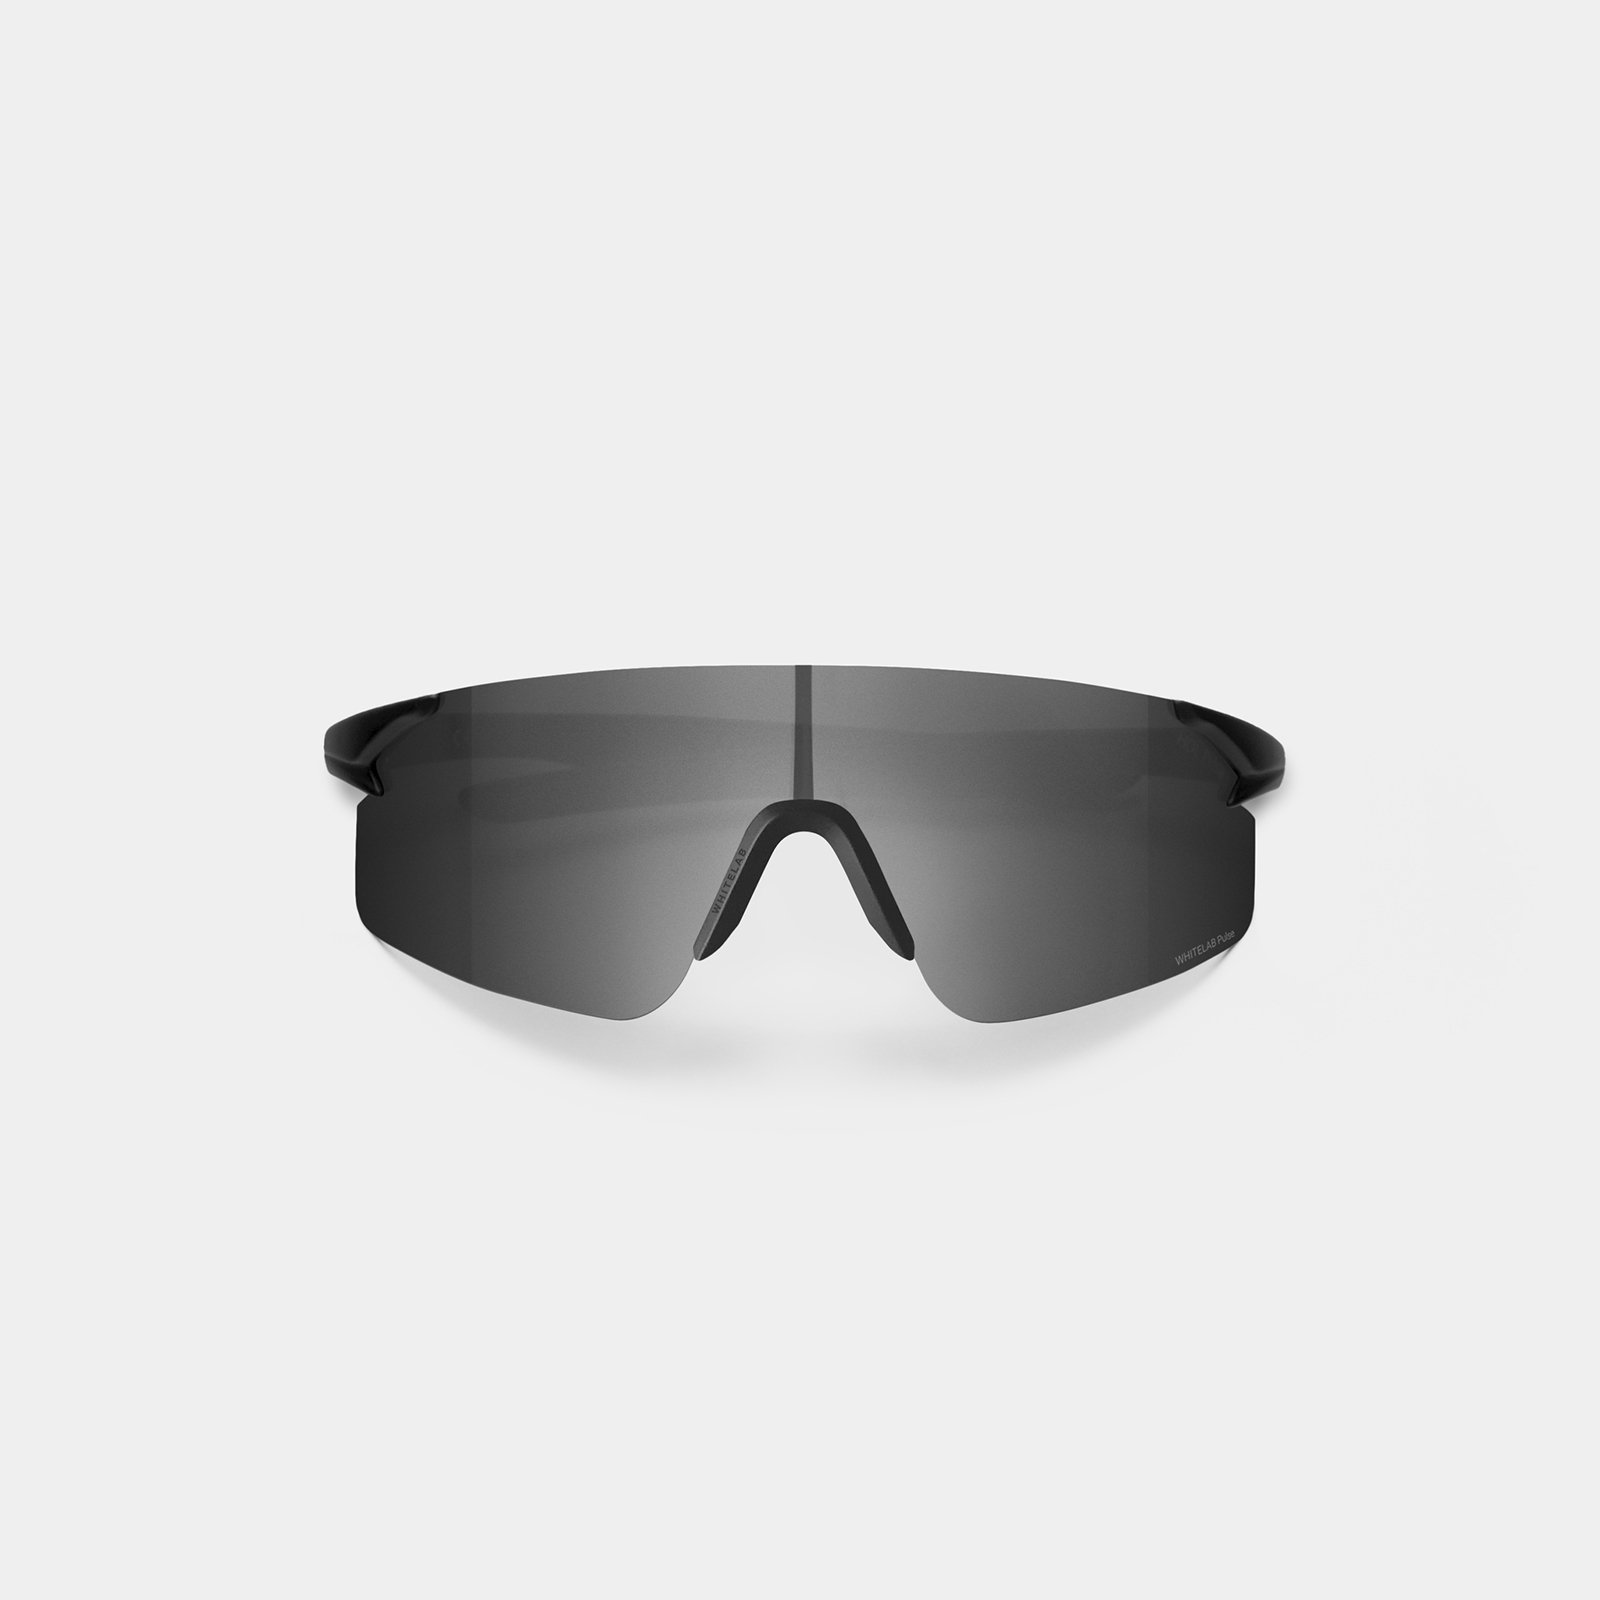  черные солнцезащитные очки White Lab Visor Visor black/black - цена, описание, фото 1